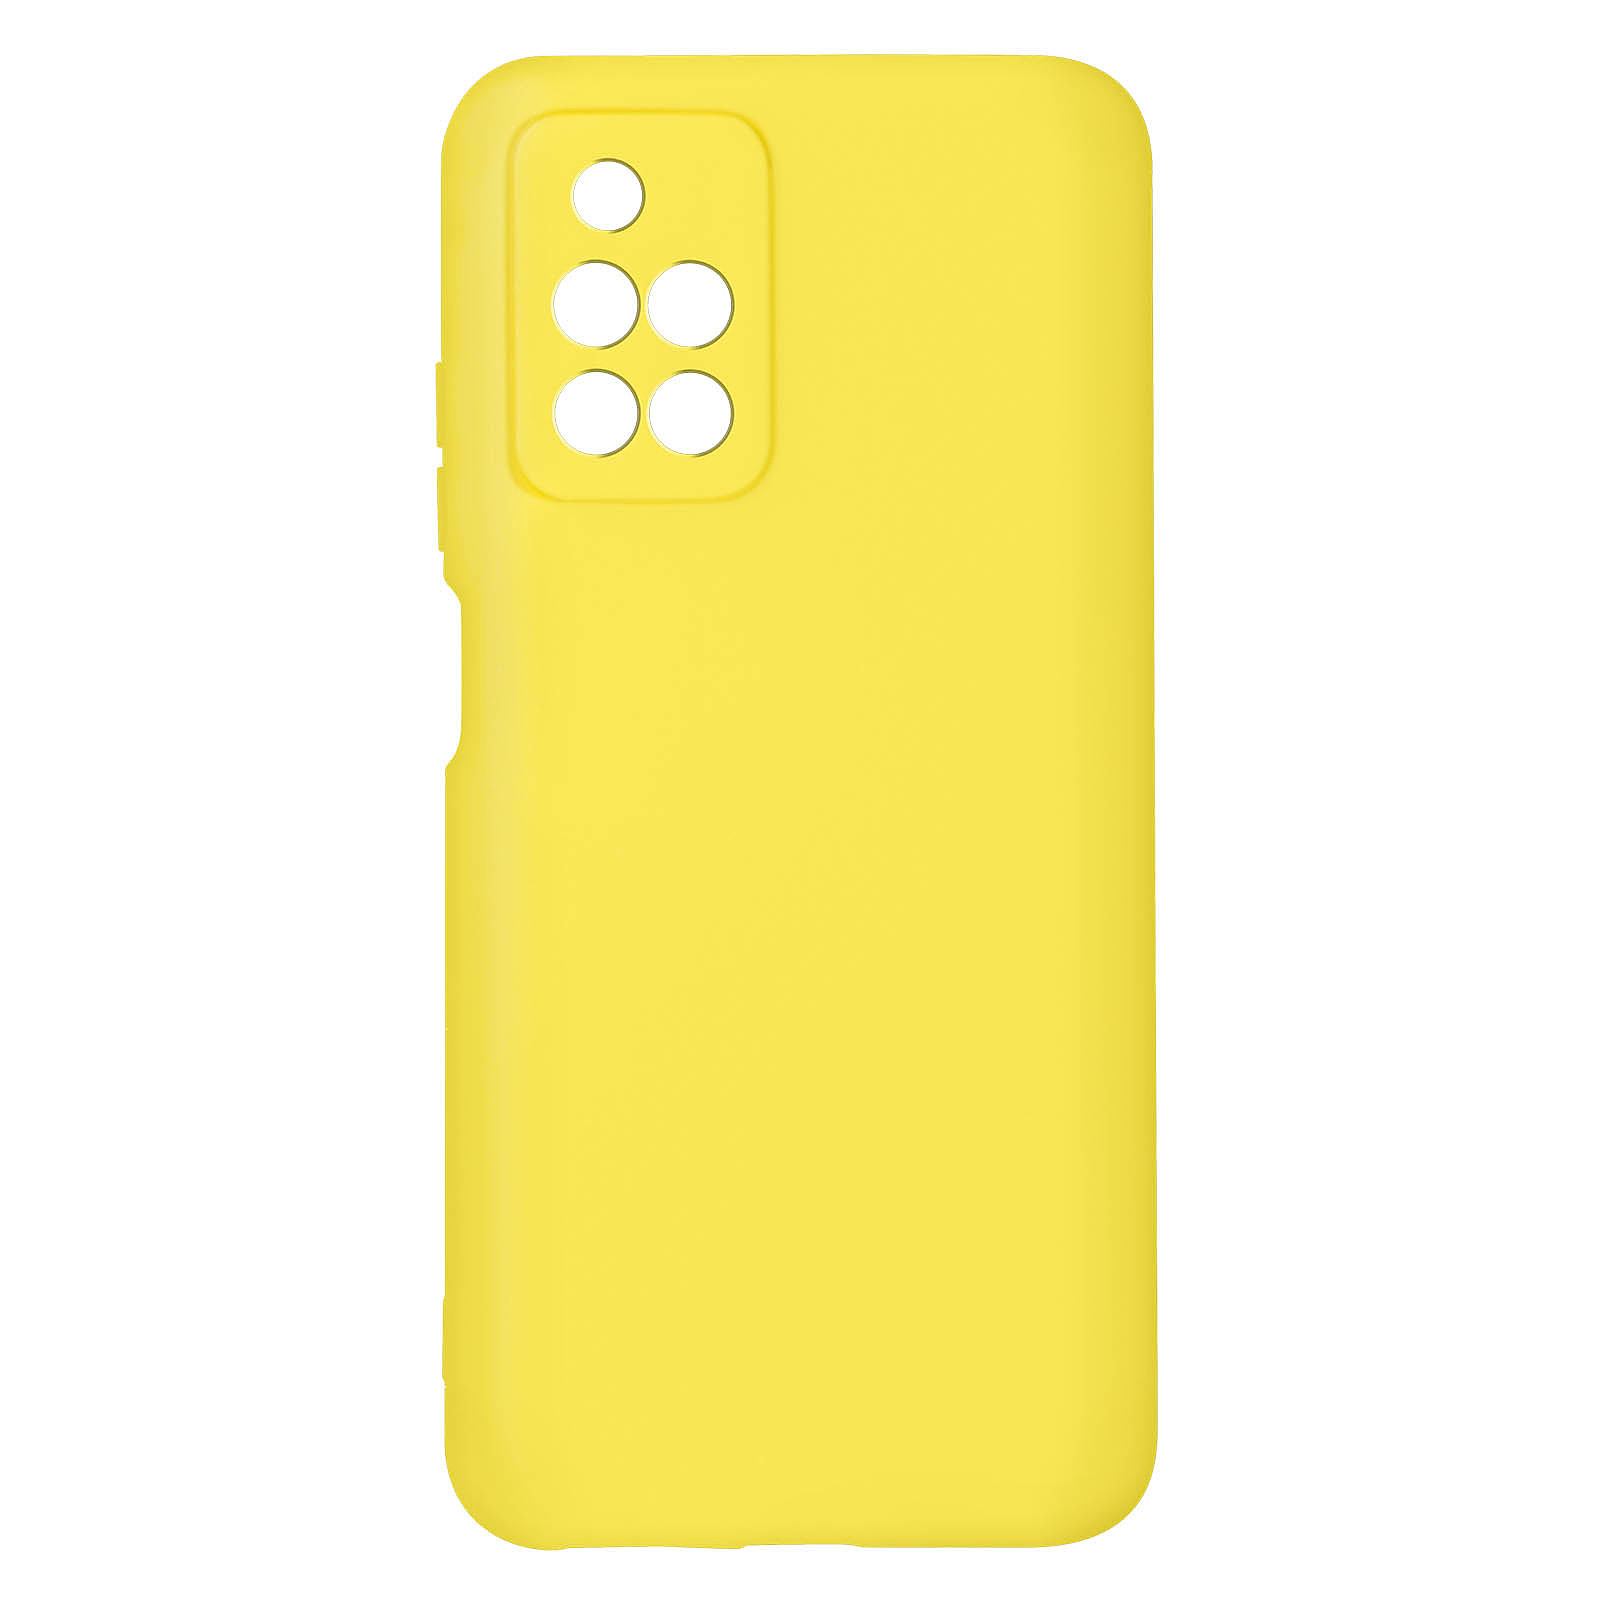 Avizar Coque pour Xiaomi Redmi 10 Silicone Semi-rigide Finition Soft-touch Fine jaune - Coque telephone Avizar